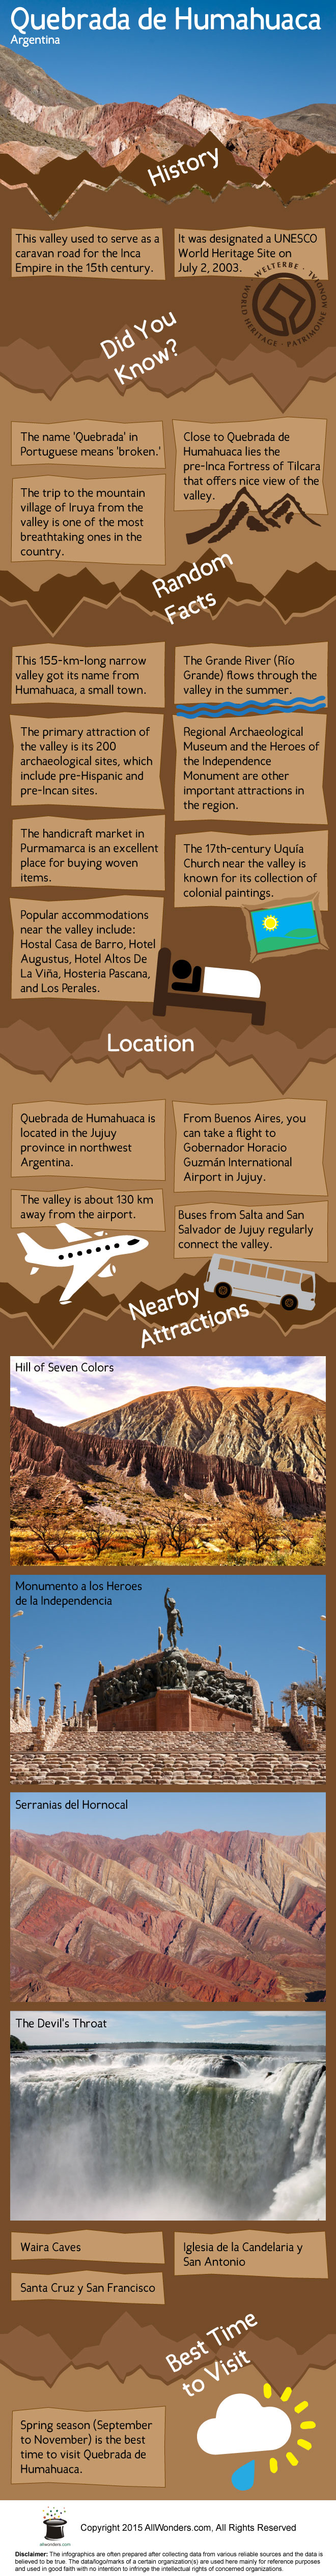 Quebrada de Humahuaca Infographic